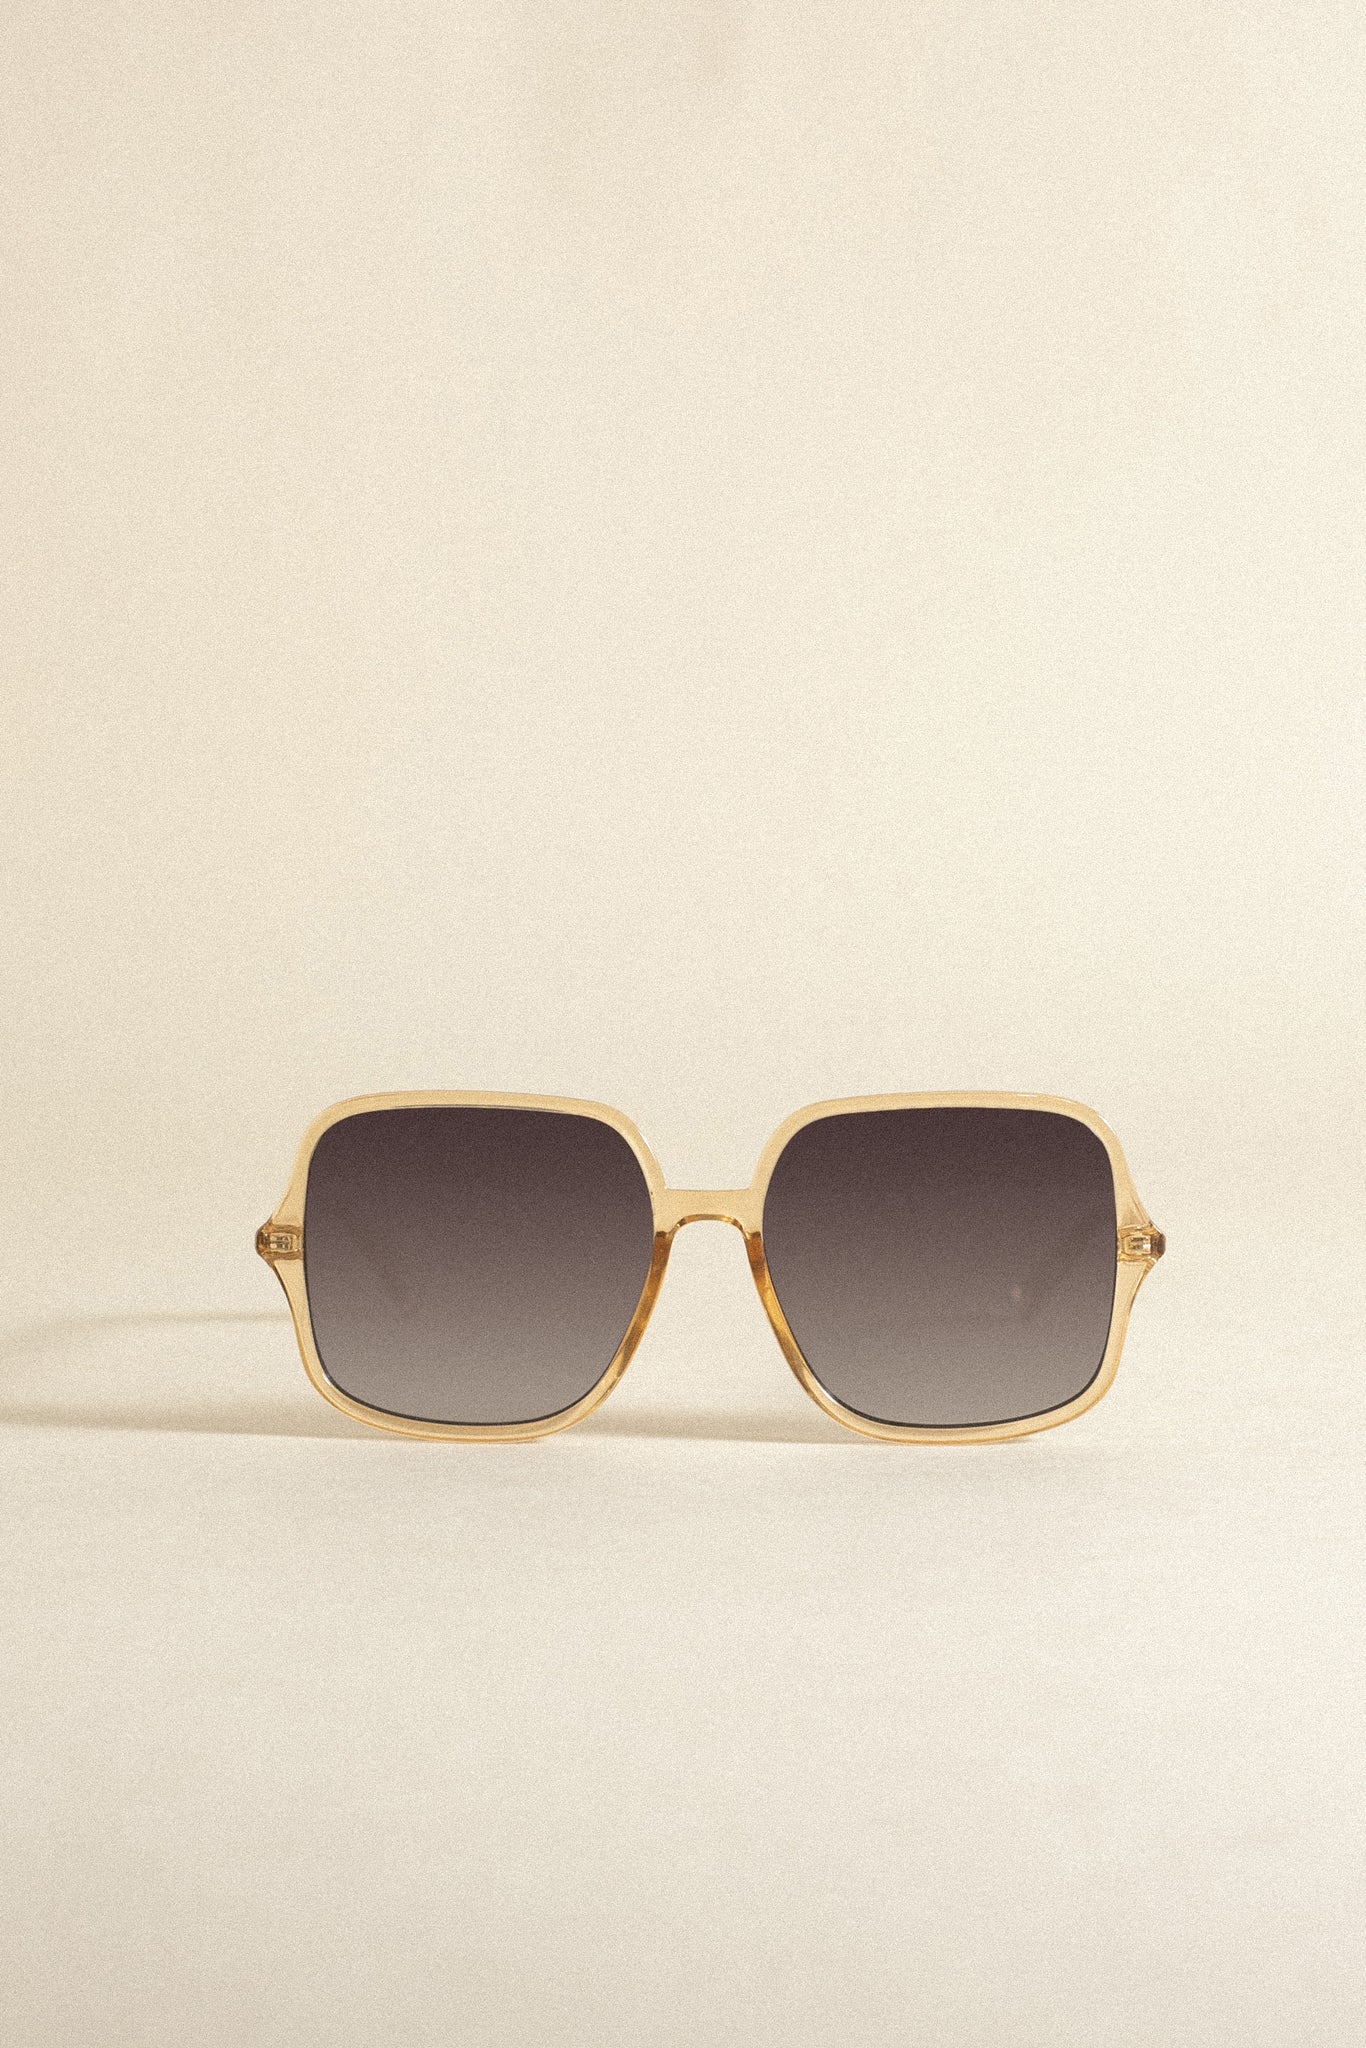 Bon Temps_70s Square Shaped Sunglasses | Sand